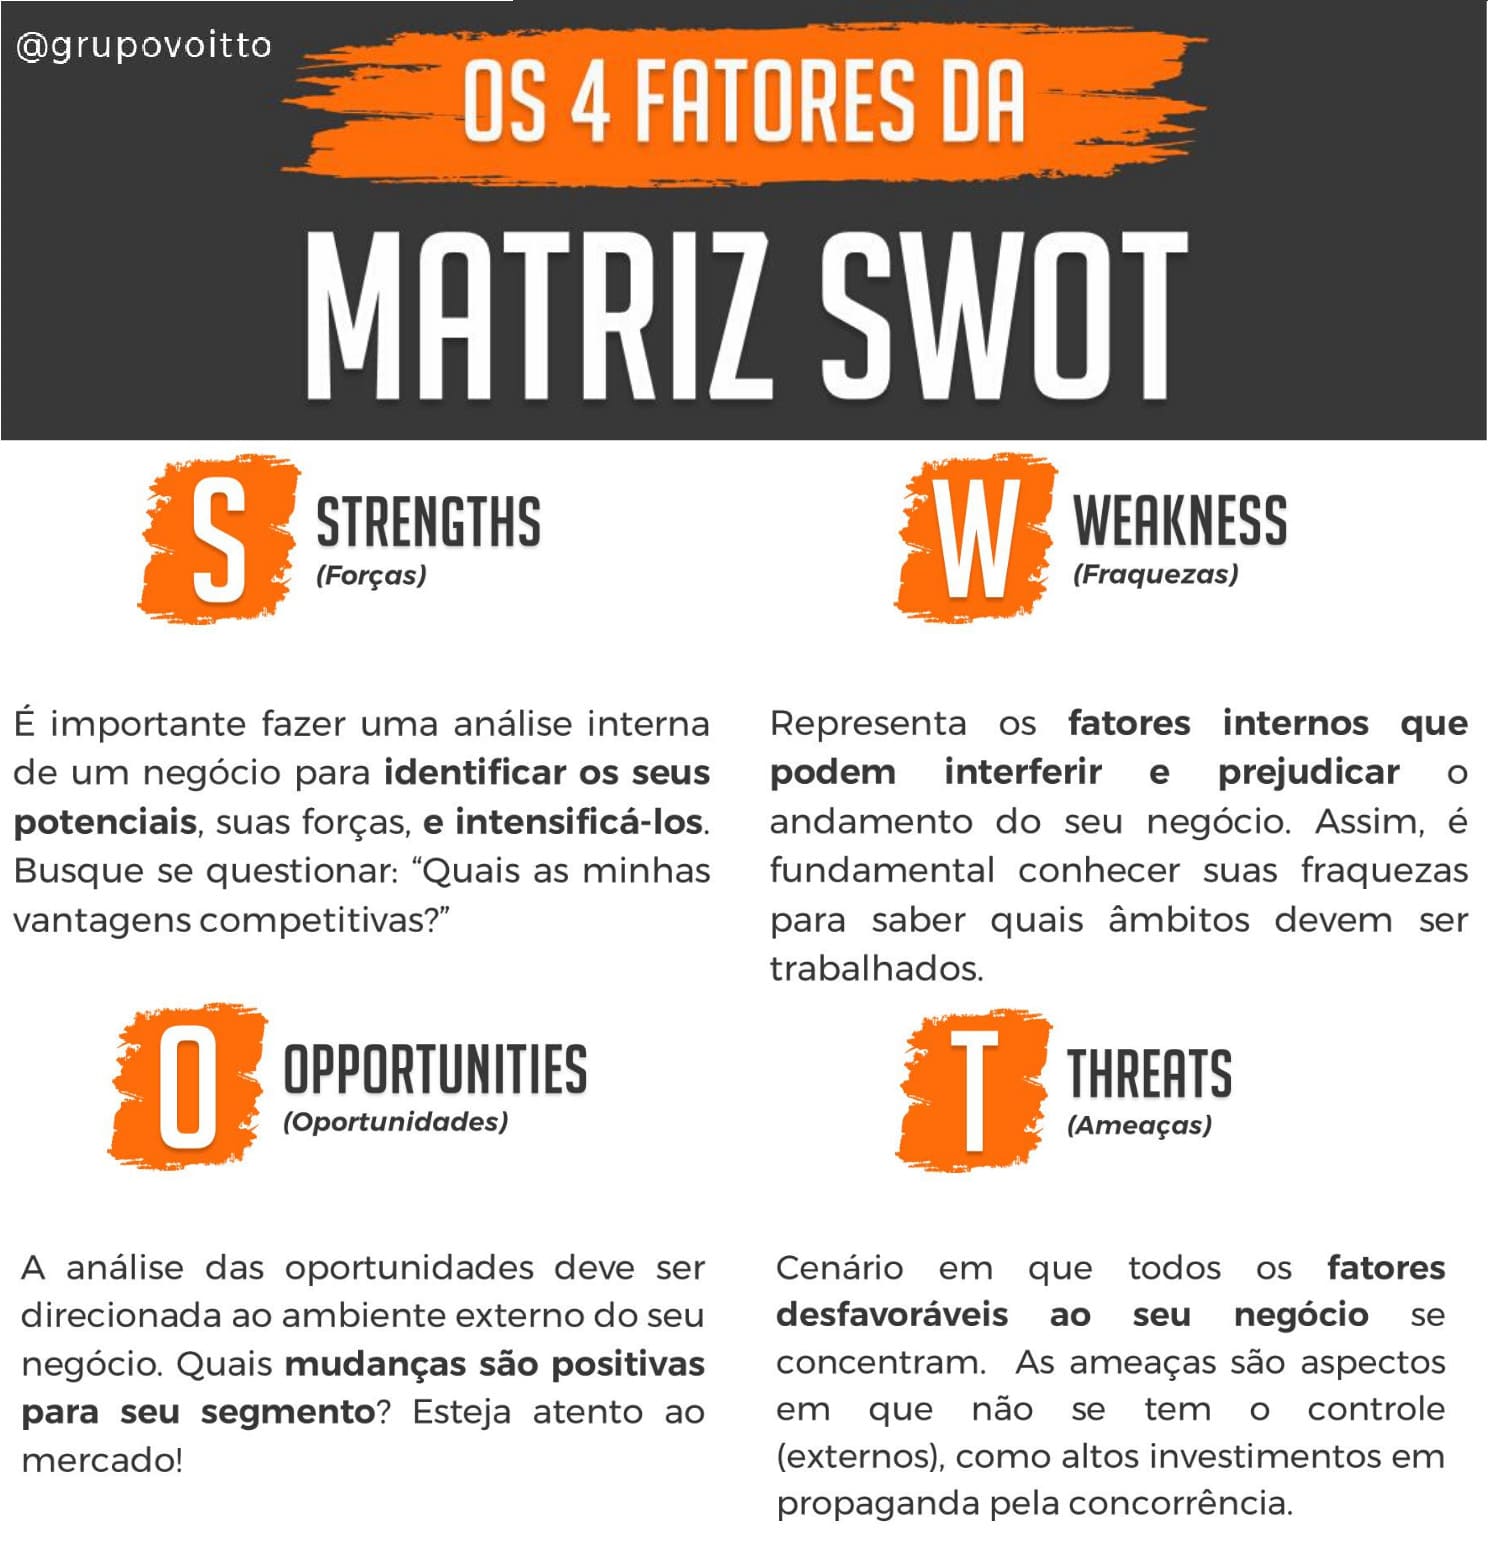 Os 4 fatores da matriz SWOT